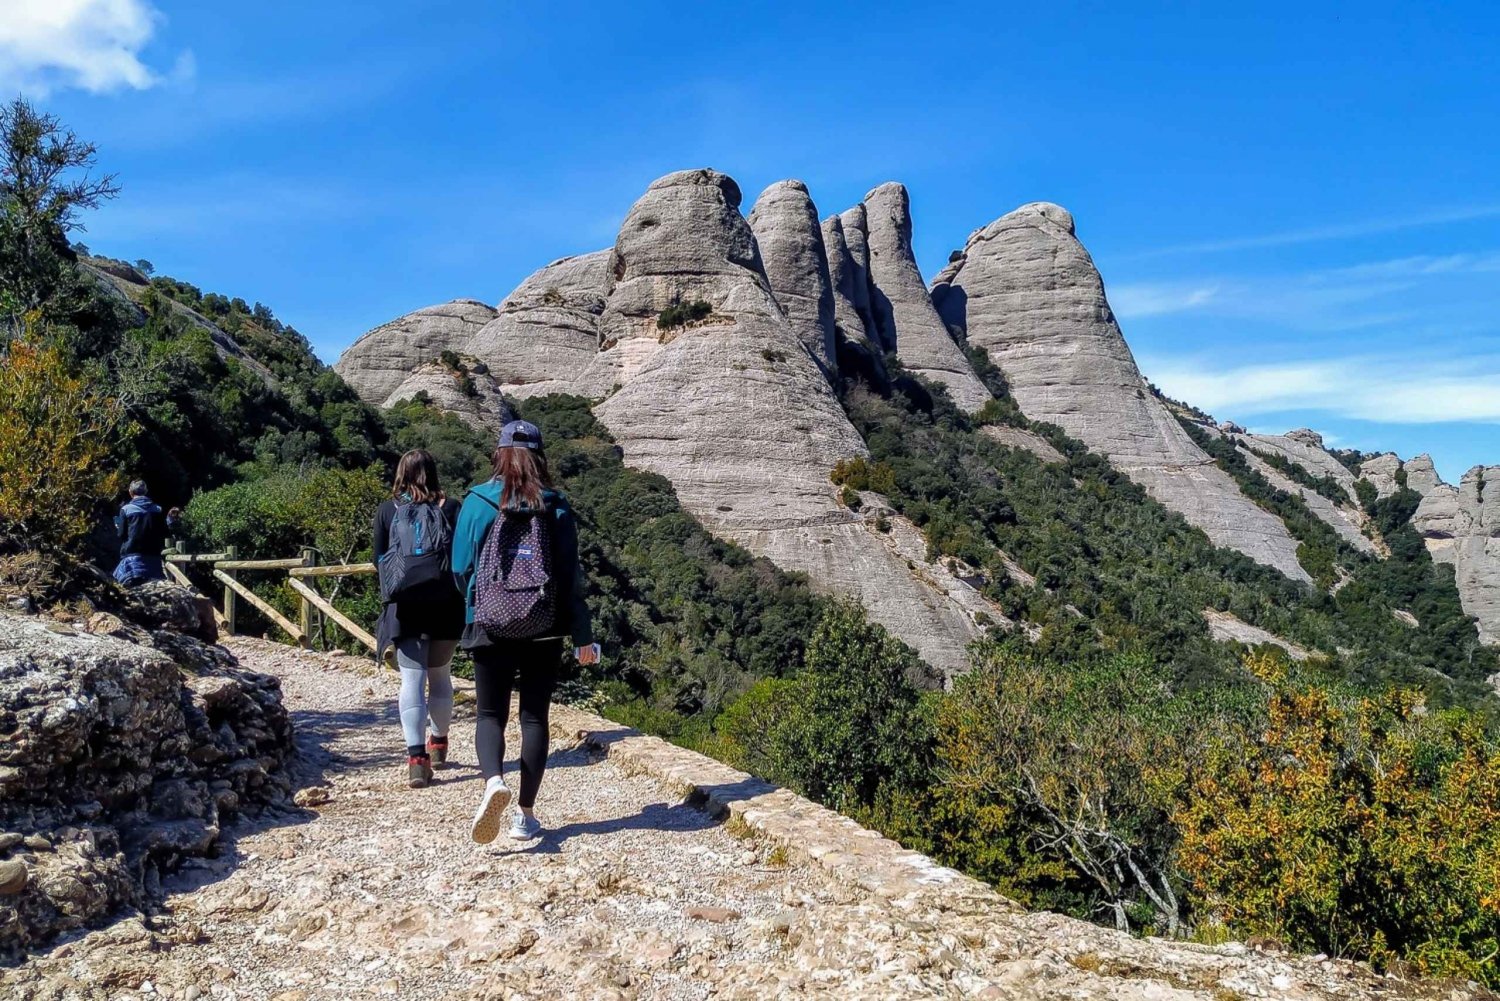 Desde Barcelona: Excursión Panorámica y Visita al Monasterio de Montserrat